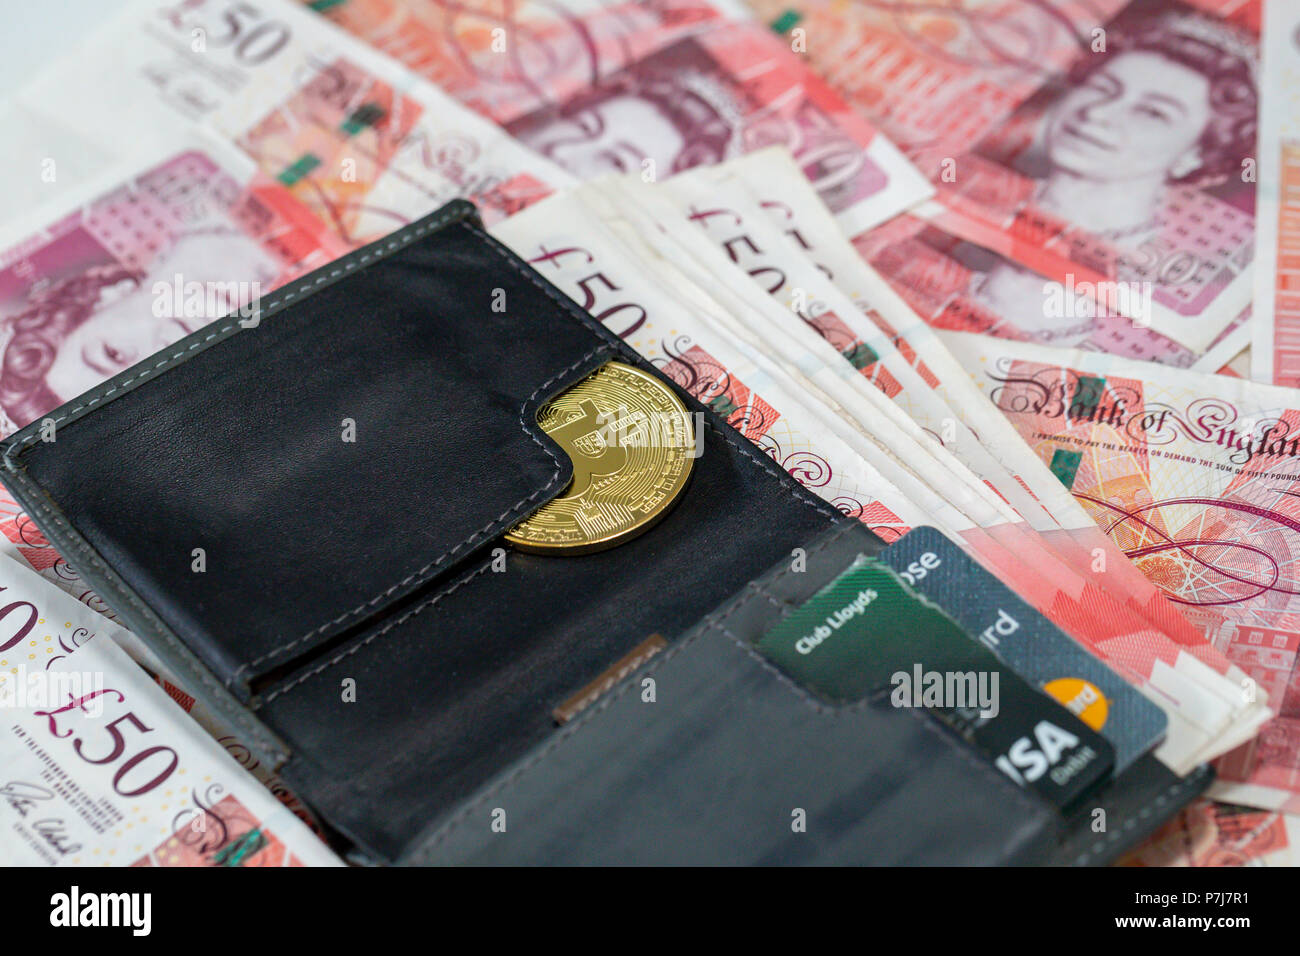 Un monedero conteniendo un bitcoin y 50 libras esterlinas billetes de banco en una gran pila de más cincuenta libras billetes usados Foto de stock